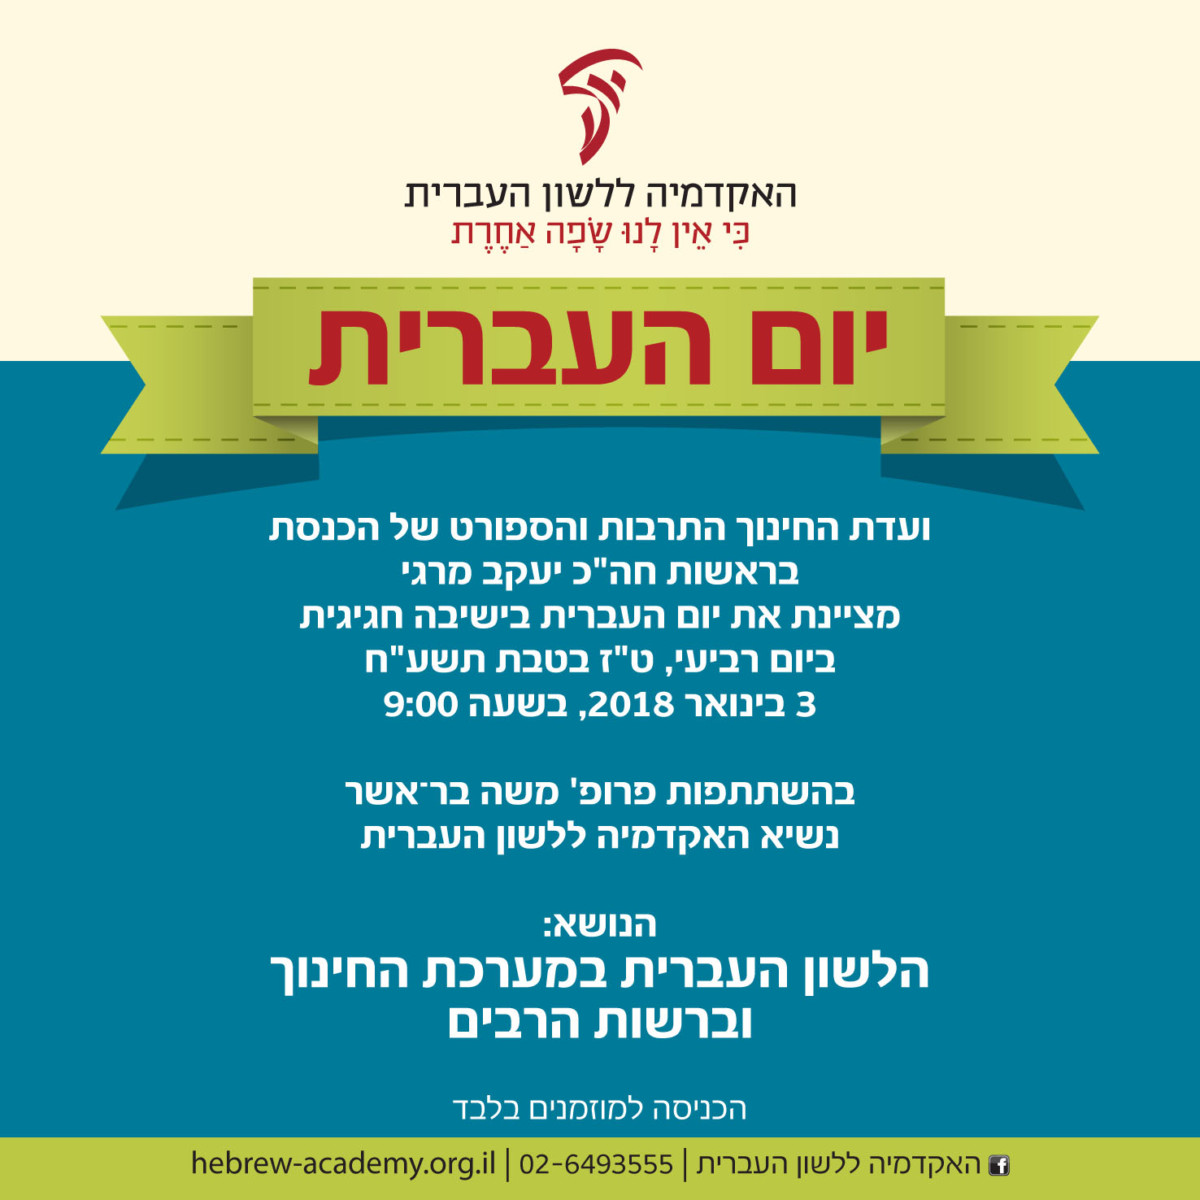 הזמנה לוועדת החינוך של הכנסת - ישיבה חגיגית יום העברית